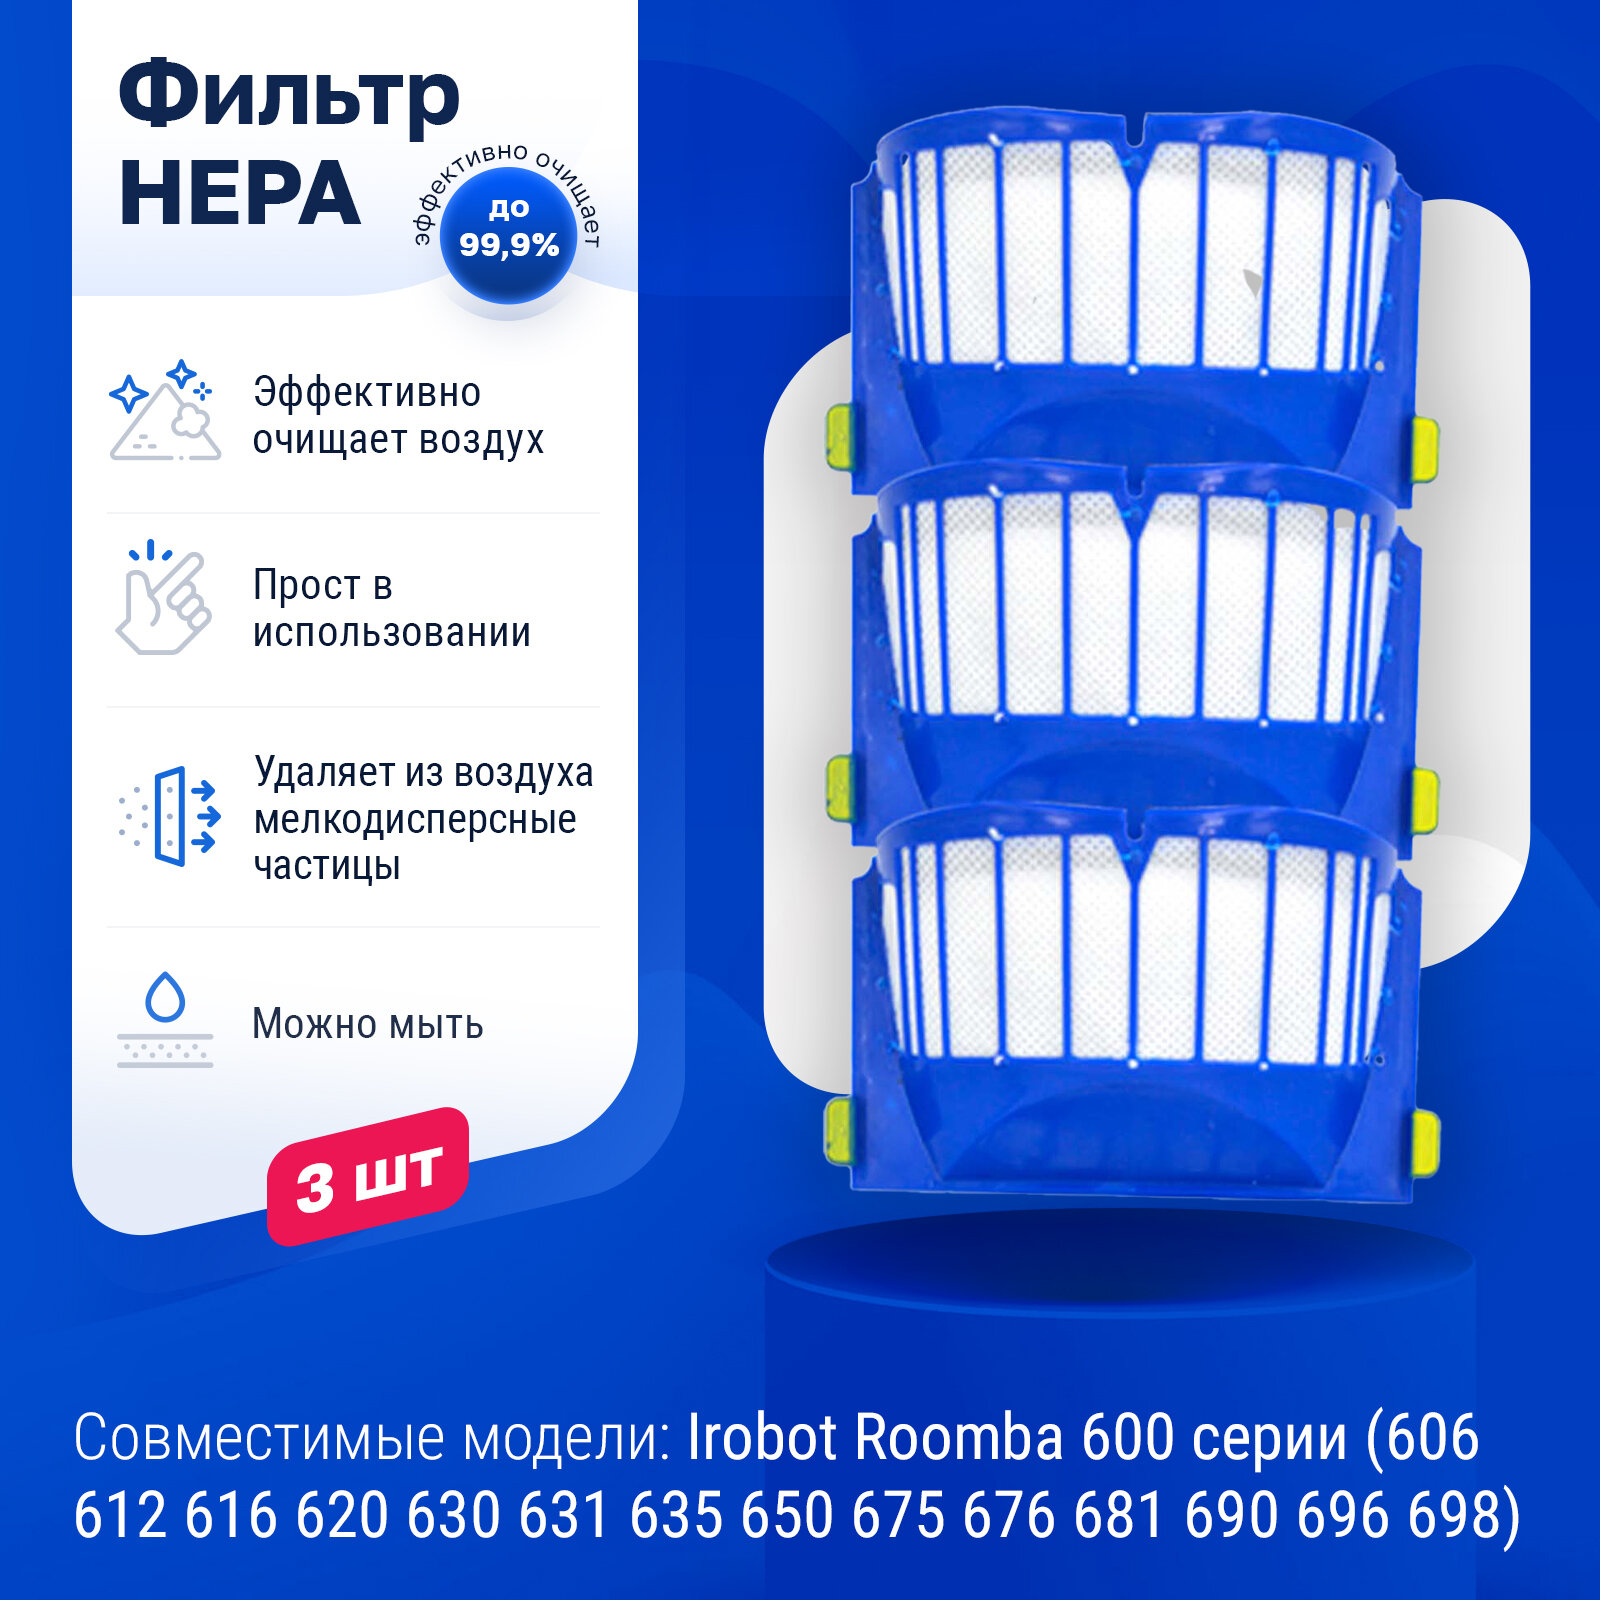 Комплект фильтров для робот-пылесоса Irobot Roomba 600 серии (606 612616 620 630 631 635 650 675 676 681 690 696 698)